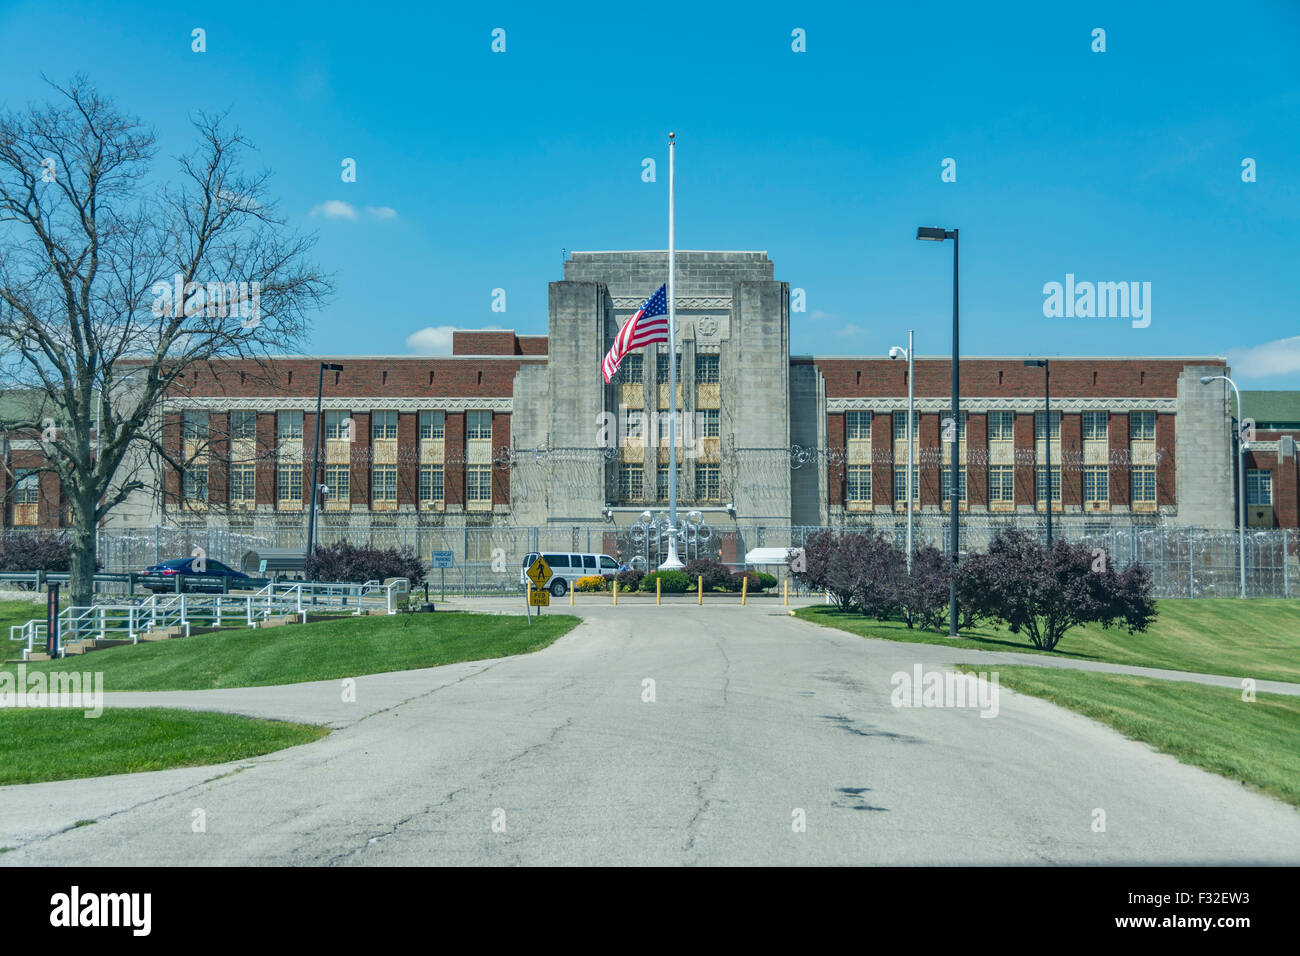 Federal Prison Medical Center in Lexington Kentucky USA Stock Photo - Alamy